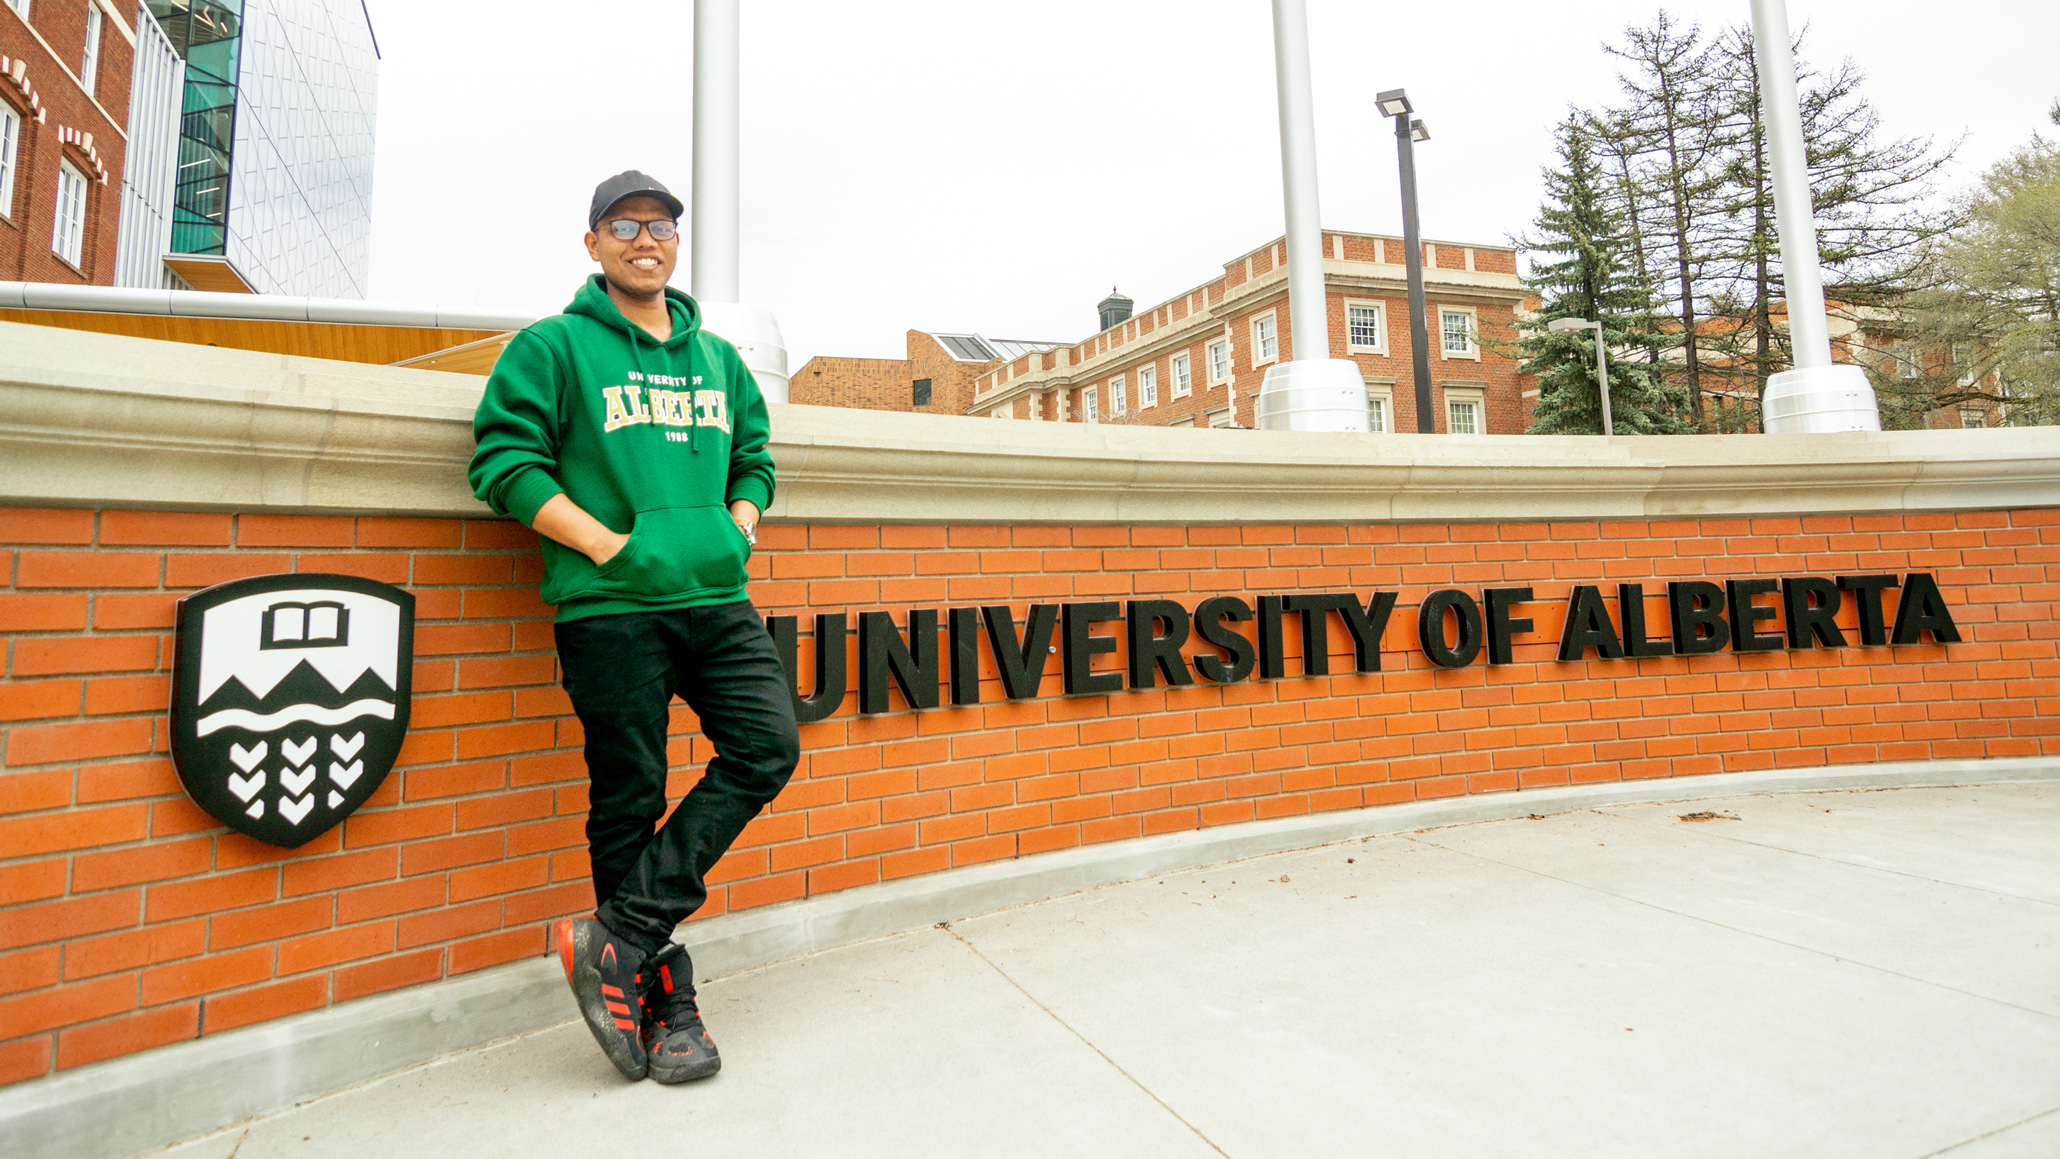 Saiful poses at the University of Alberta brick wall on North Campus